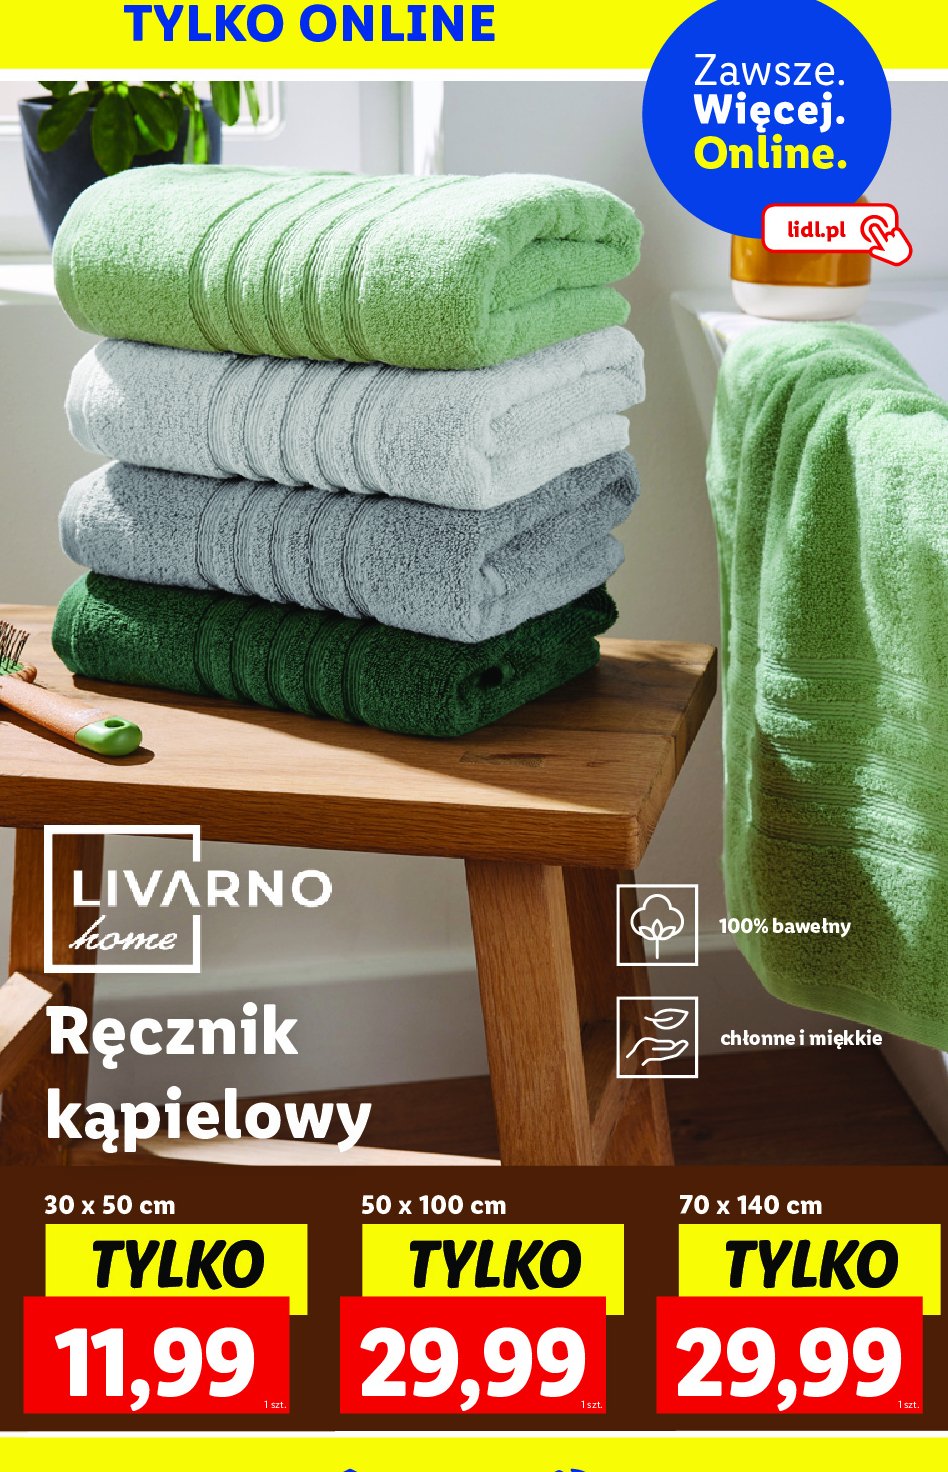 Ręcznik 30 x 50 cm LIVARNO HOME promocja